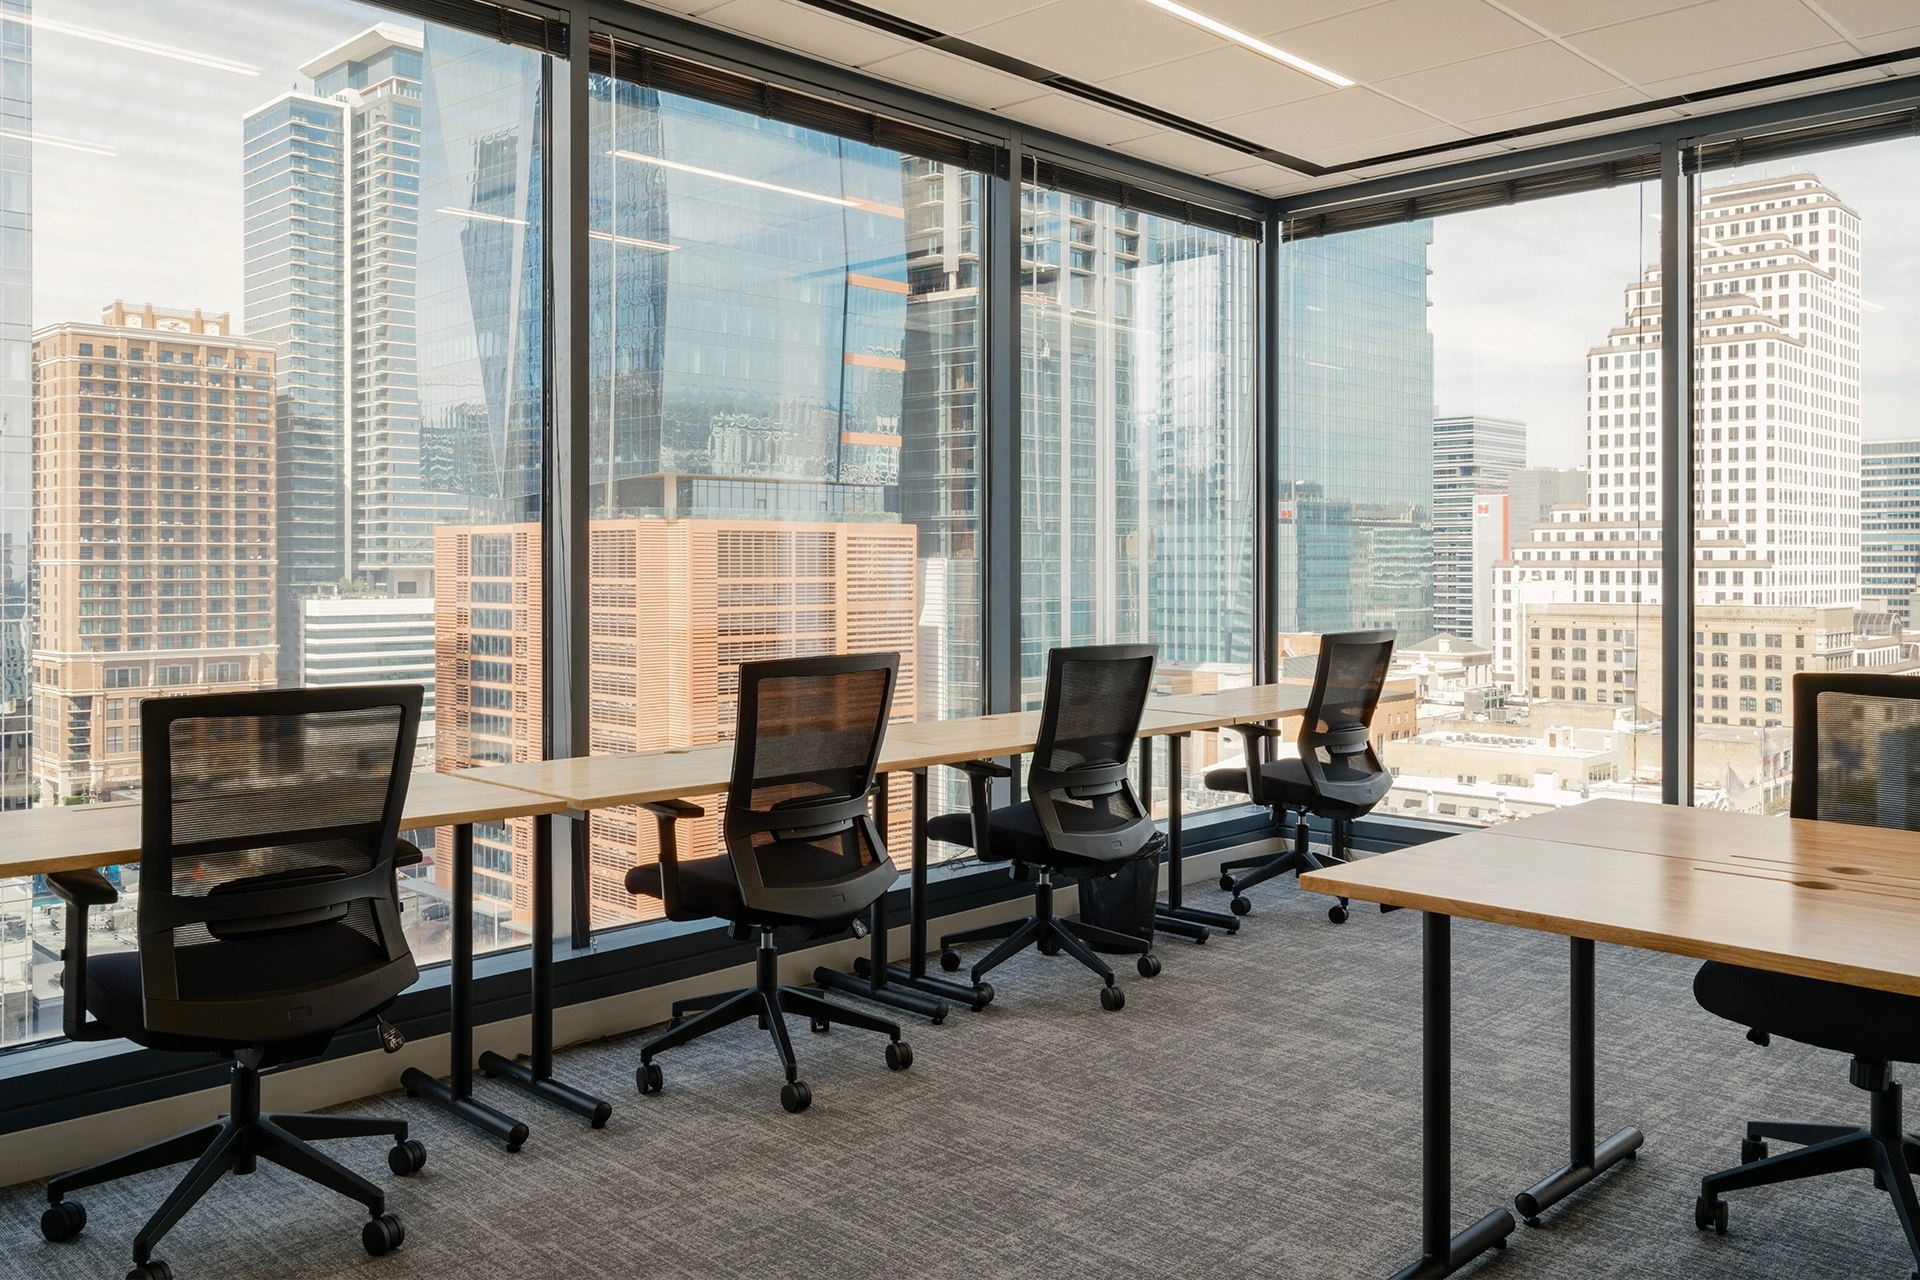 Espace de coworking moderne avec de grandes fenêtres donnant sur les toits de la ville d'Austin.